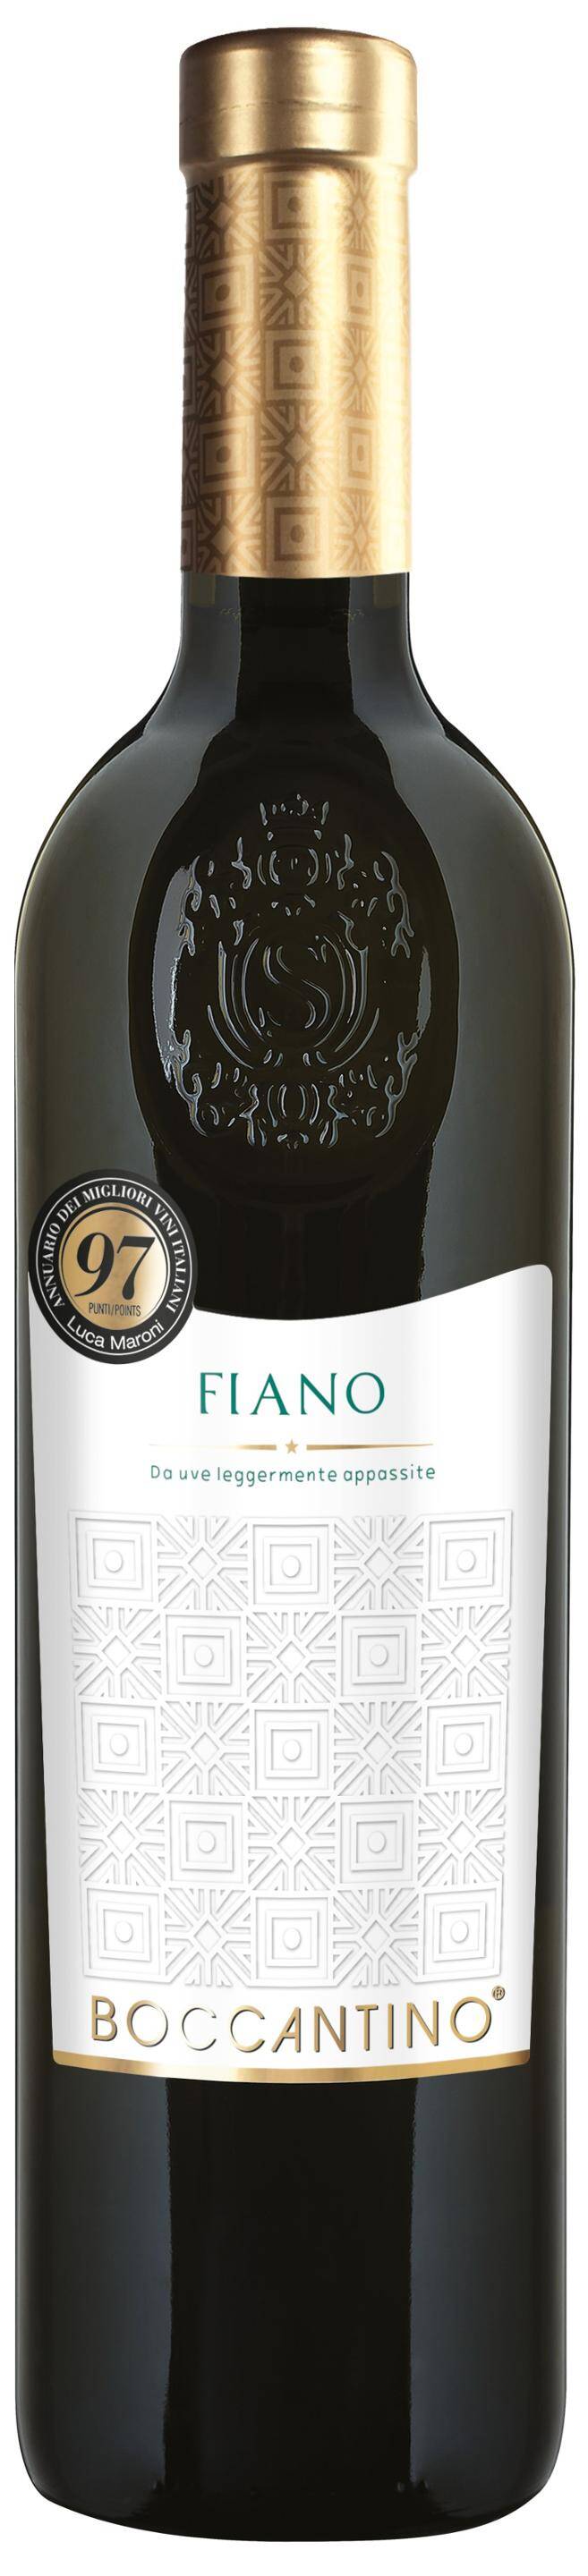 Wino włoskie SCH Boccantino Fiano Salento IGT 13,5% BW 750ml/6